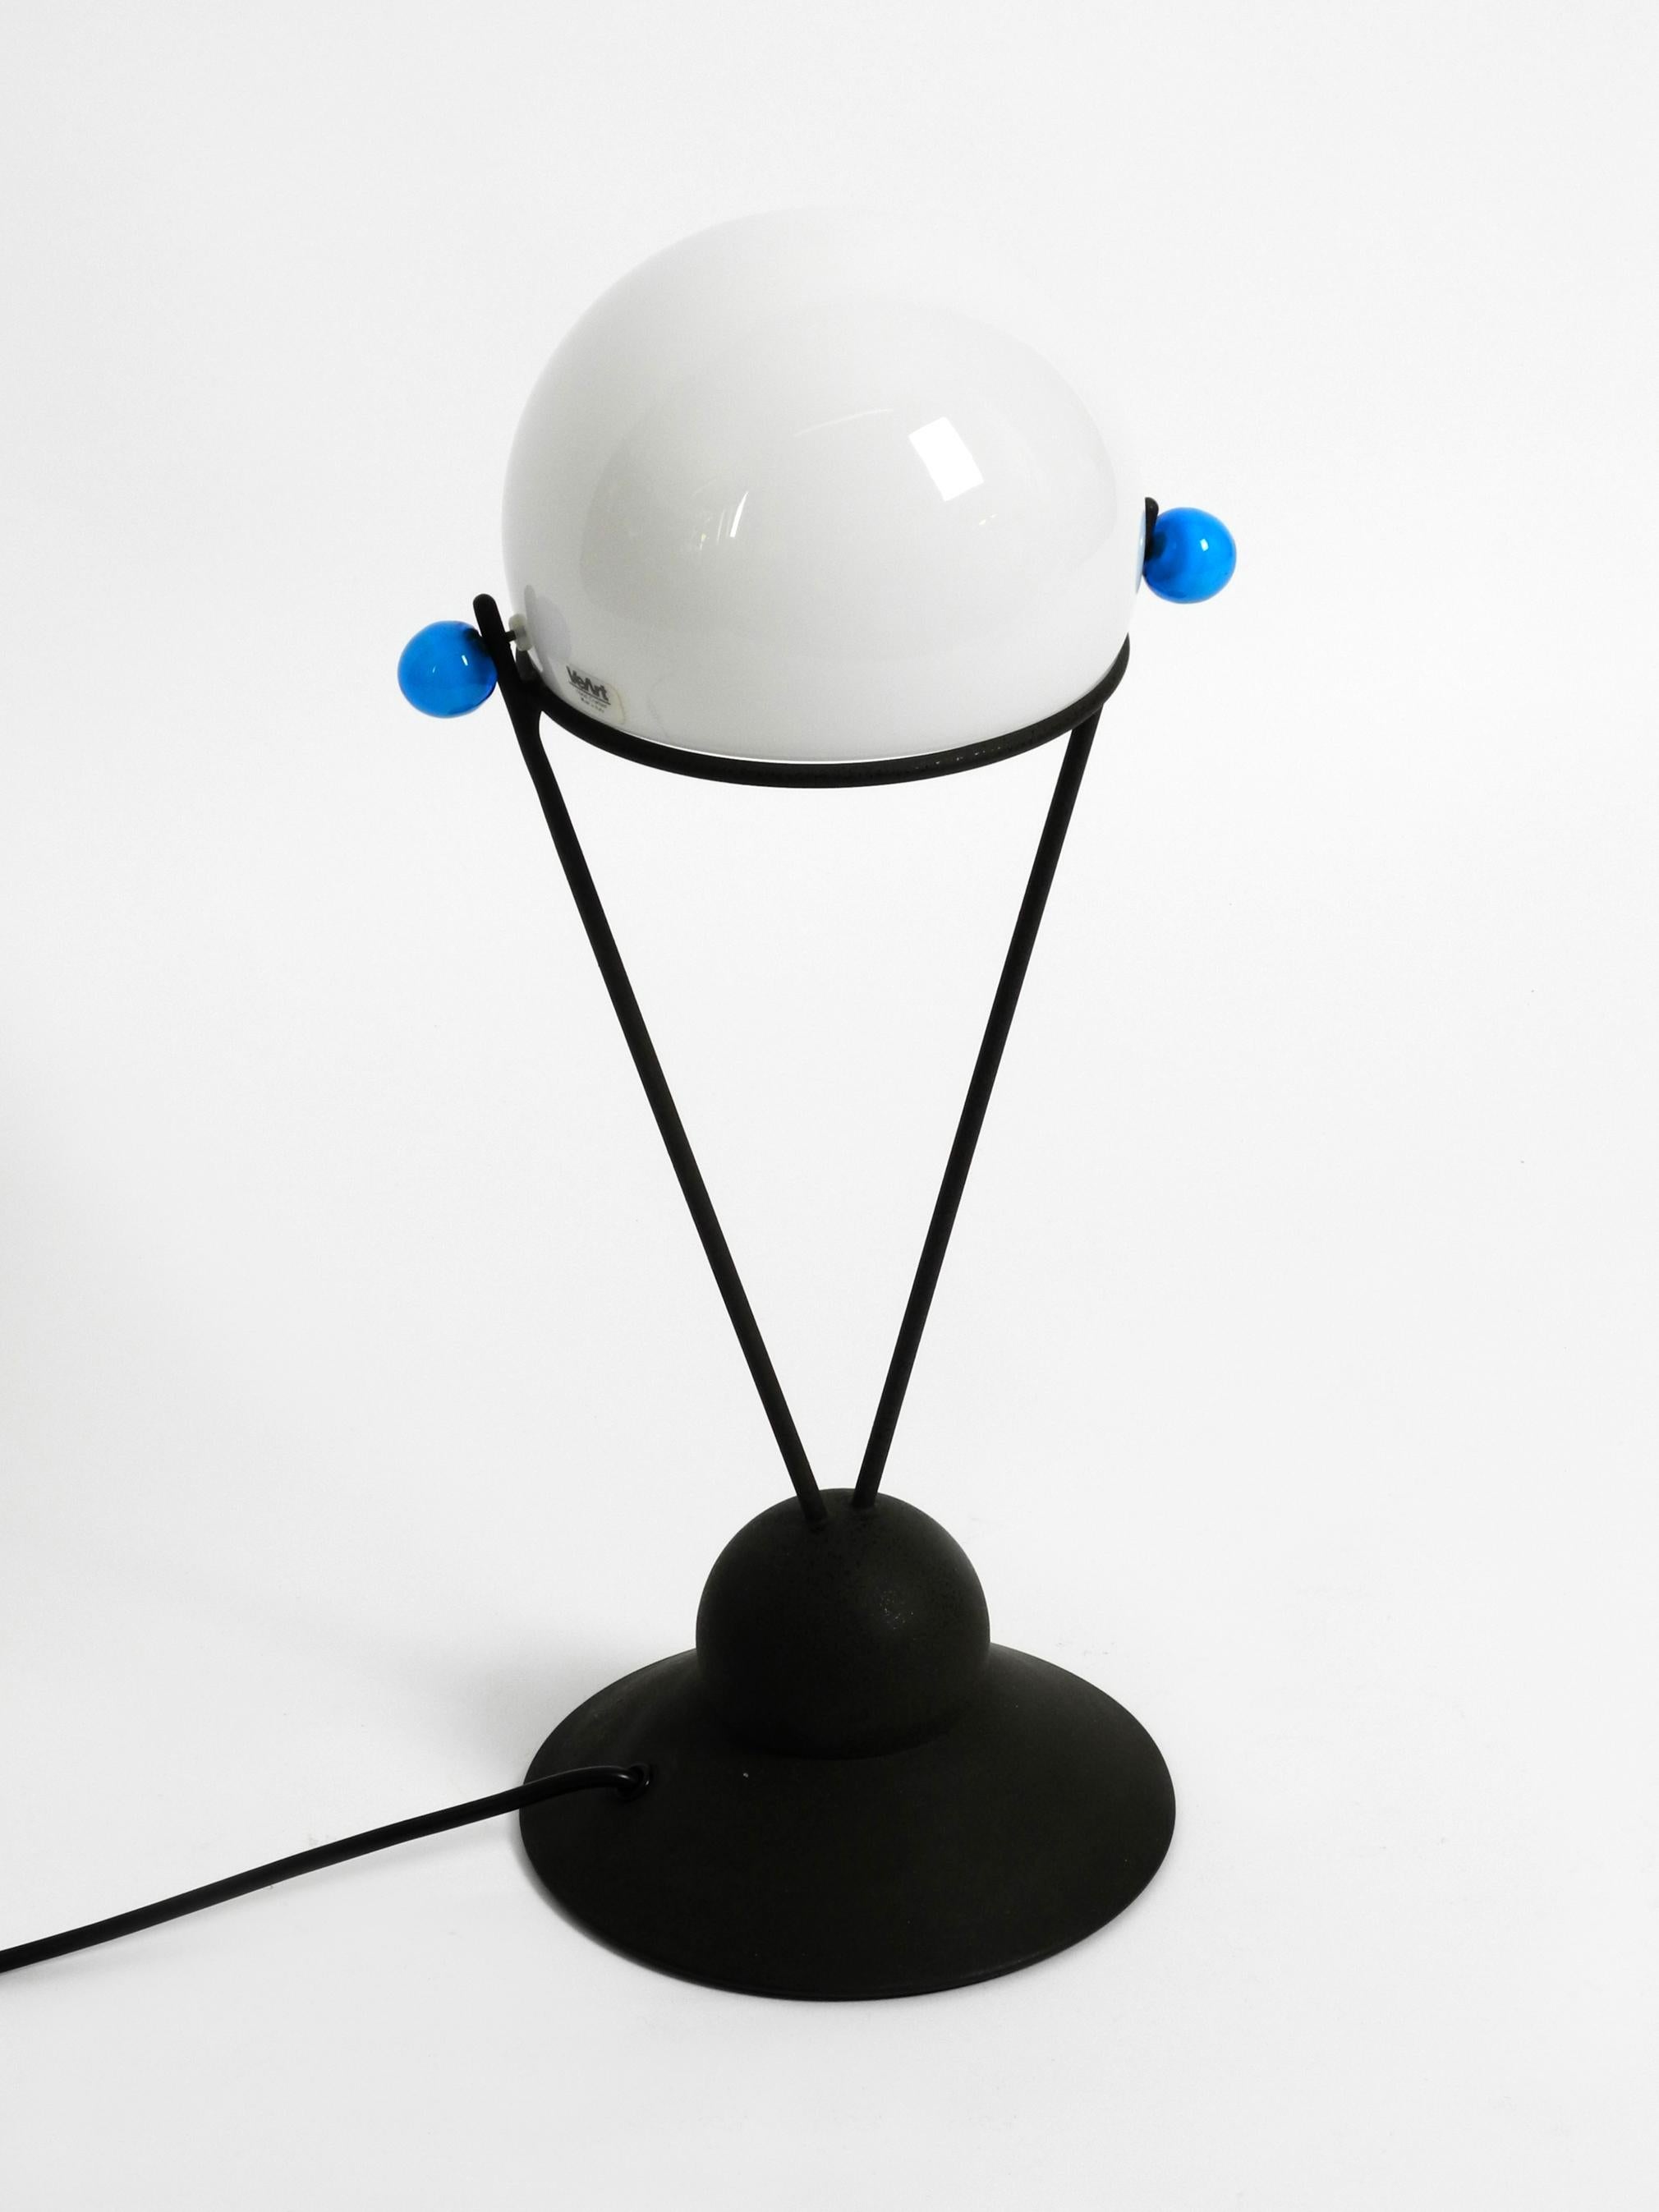 Sehr seltene italienische Tischlampe von VeArt aus den 1980er Jahren mit einem Schirm aus Muranoglas.
Tolles minimalistisches Post Modern Design, handgefertigt.
Der weiße Schirm und die blauen Knöpfe an der Seite sind aus Muranoglas